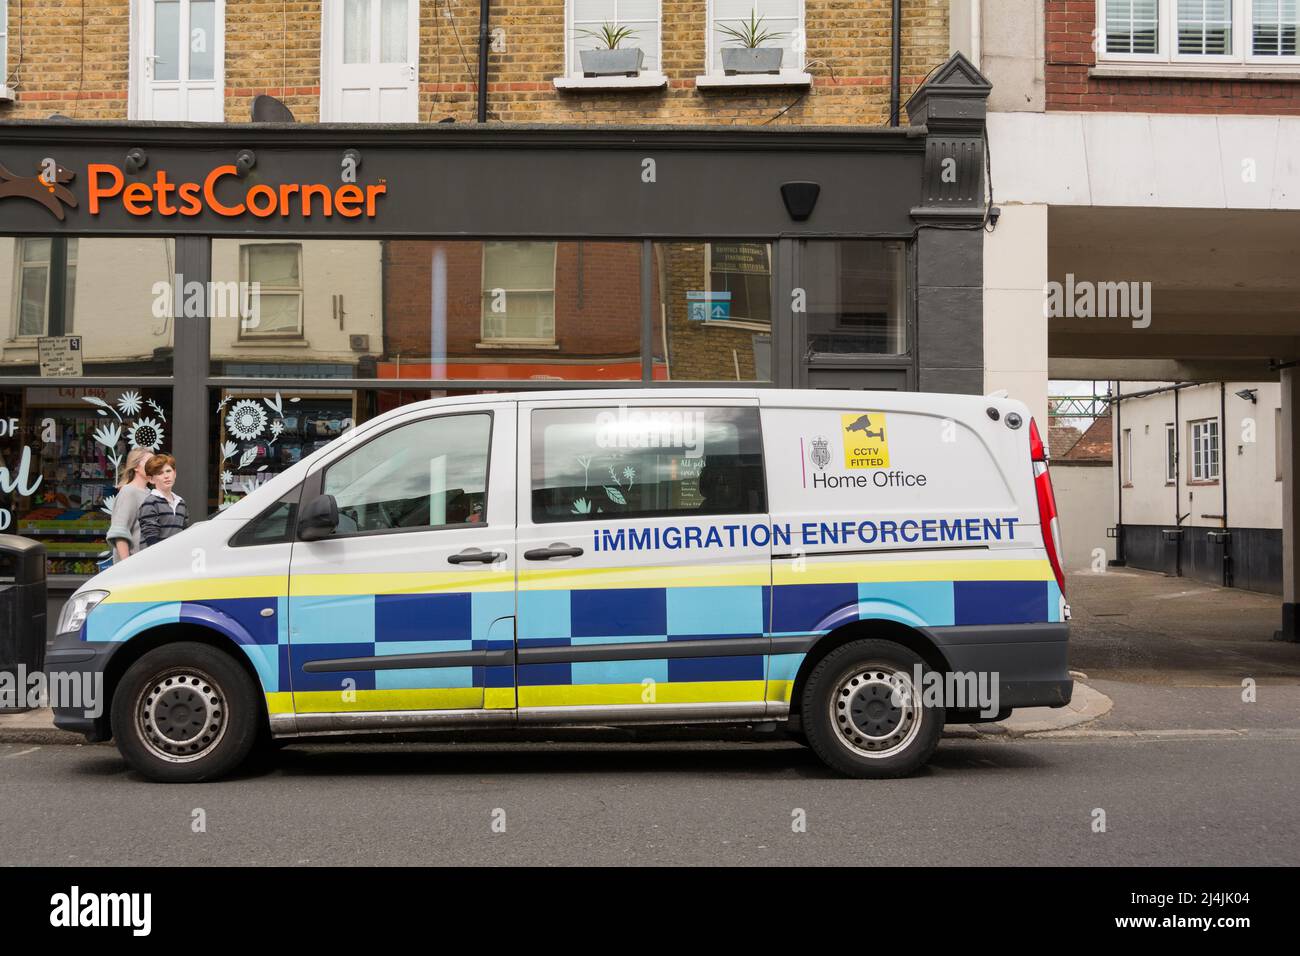 Heimatamt Immigration Enforcement van im Südwesten von London, England, Großbritannien Stockfoto